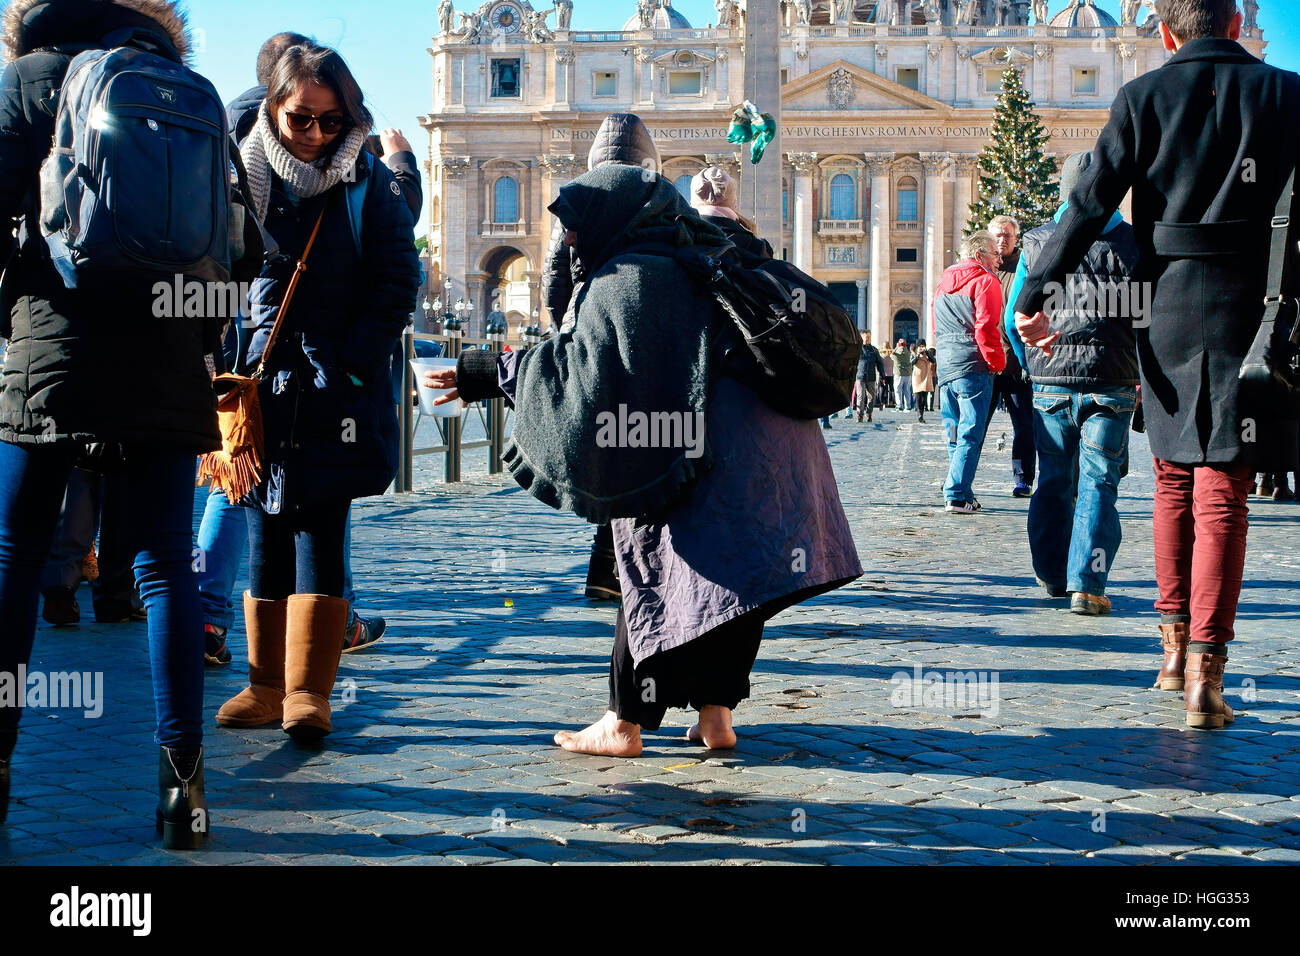 Mendiant non identifié mendiant parmi une foule de gens passant par la place Saint-Pierre. Vatican, Rome, Italie, Europe, Union européenne, UE. Banque D'Images